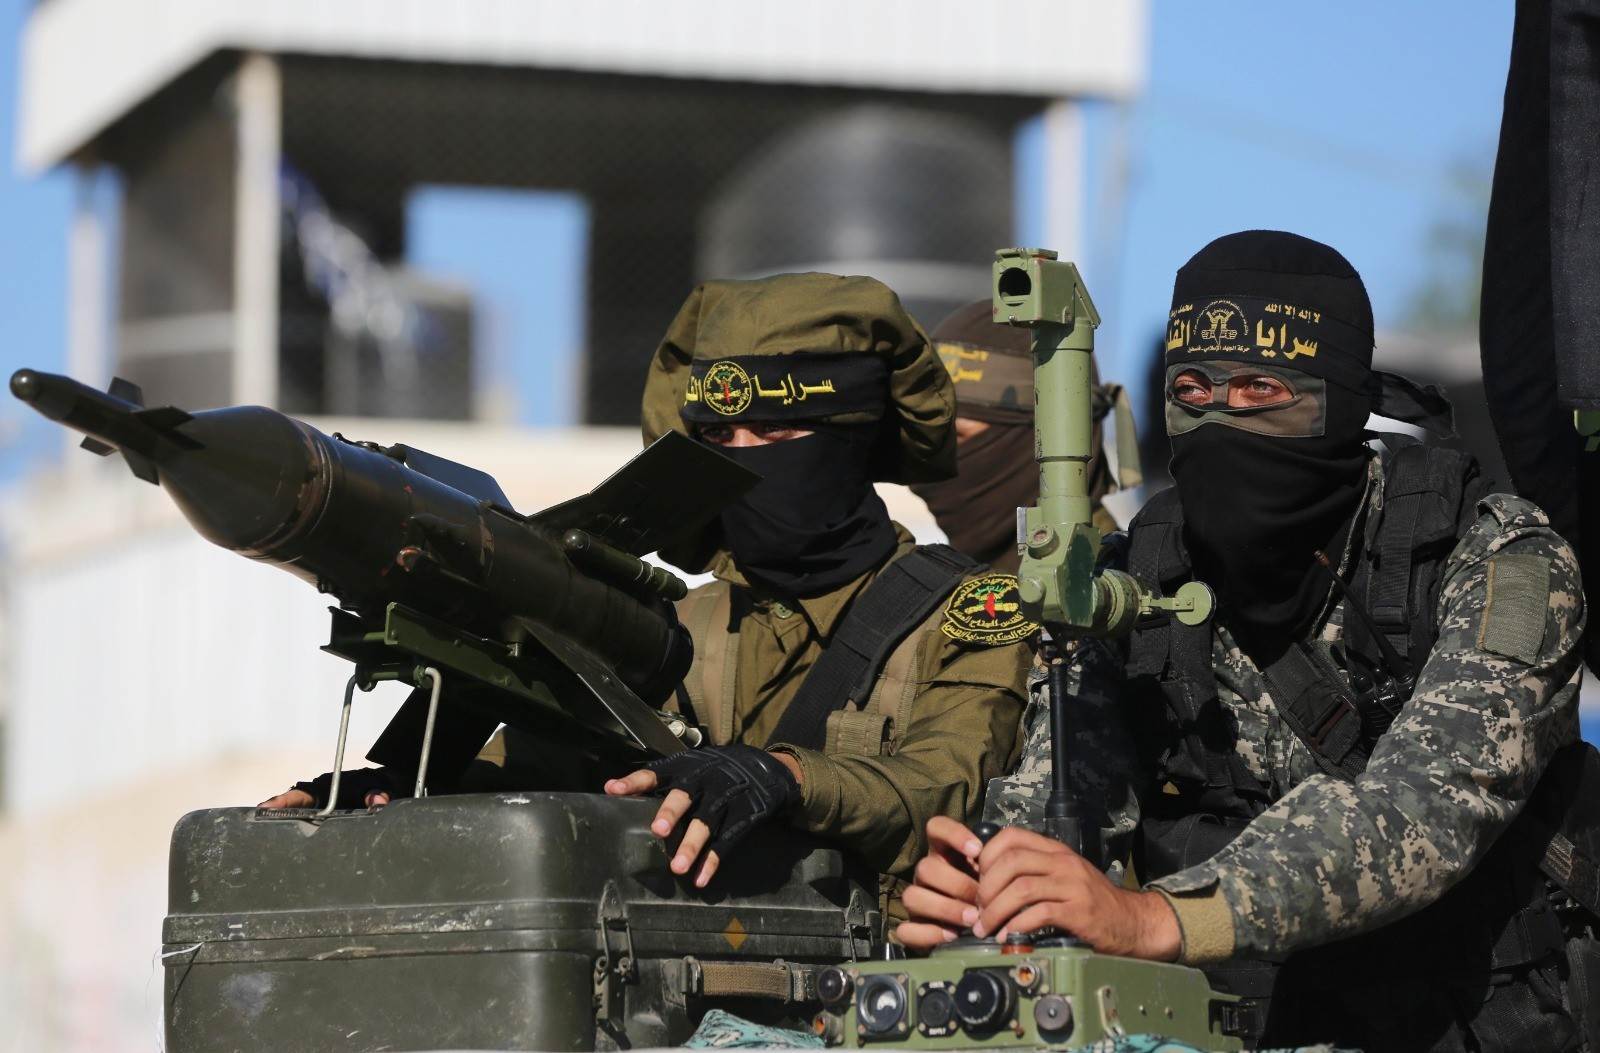 سرايا القدس- كتيبة نابلس تستهدف الاحتلال بشكل مباشر وتوقع بينهم إصابات مؤكدة